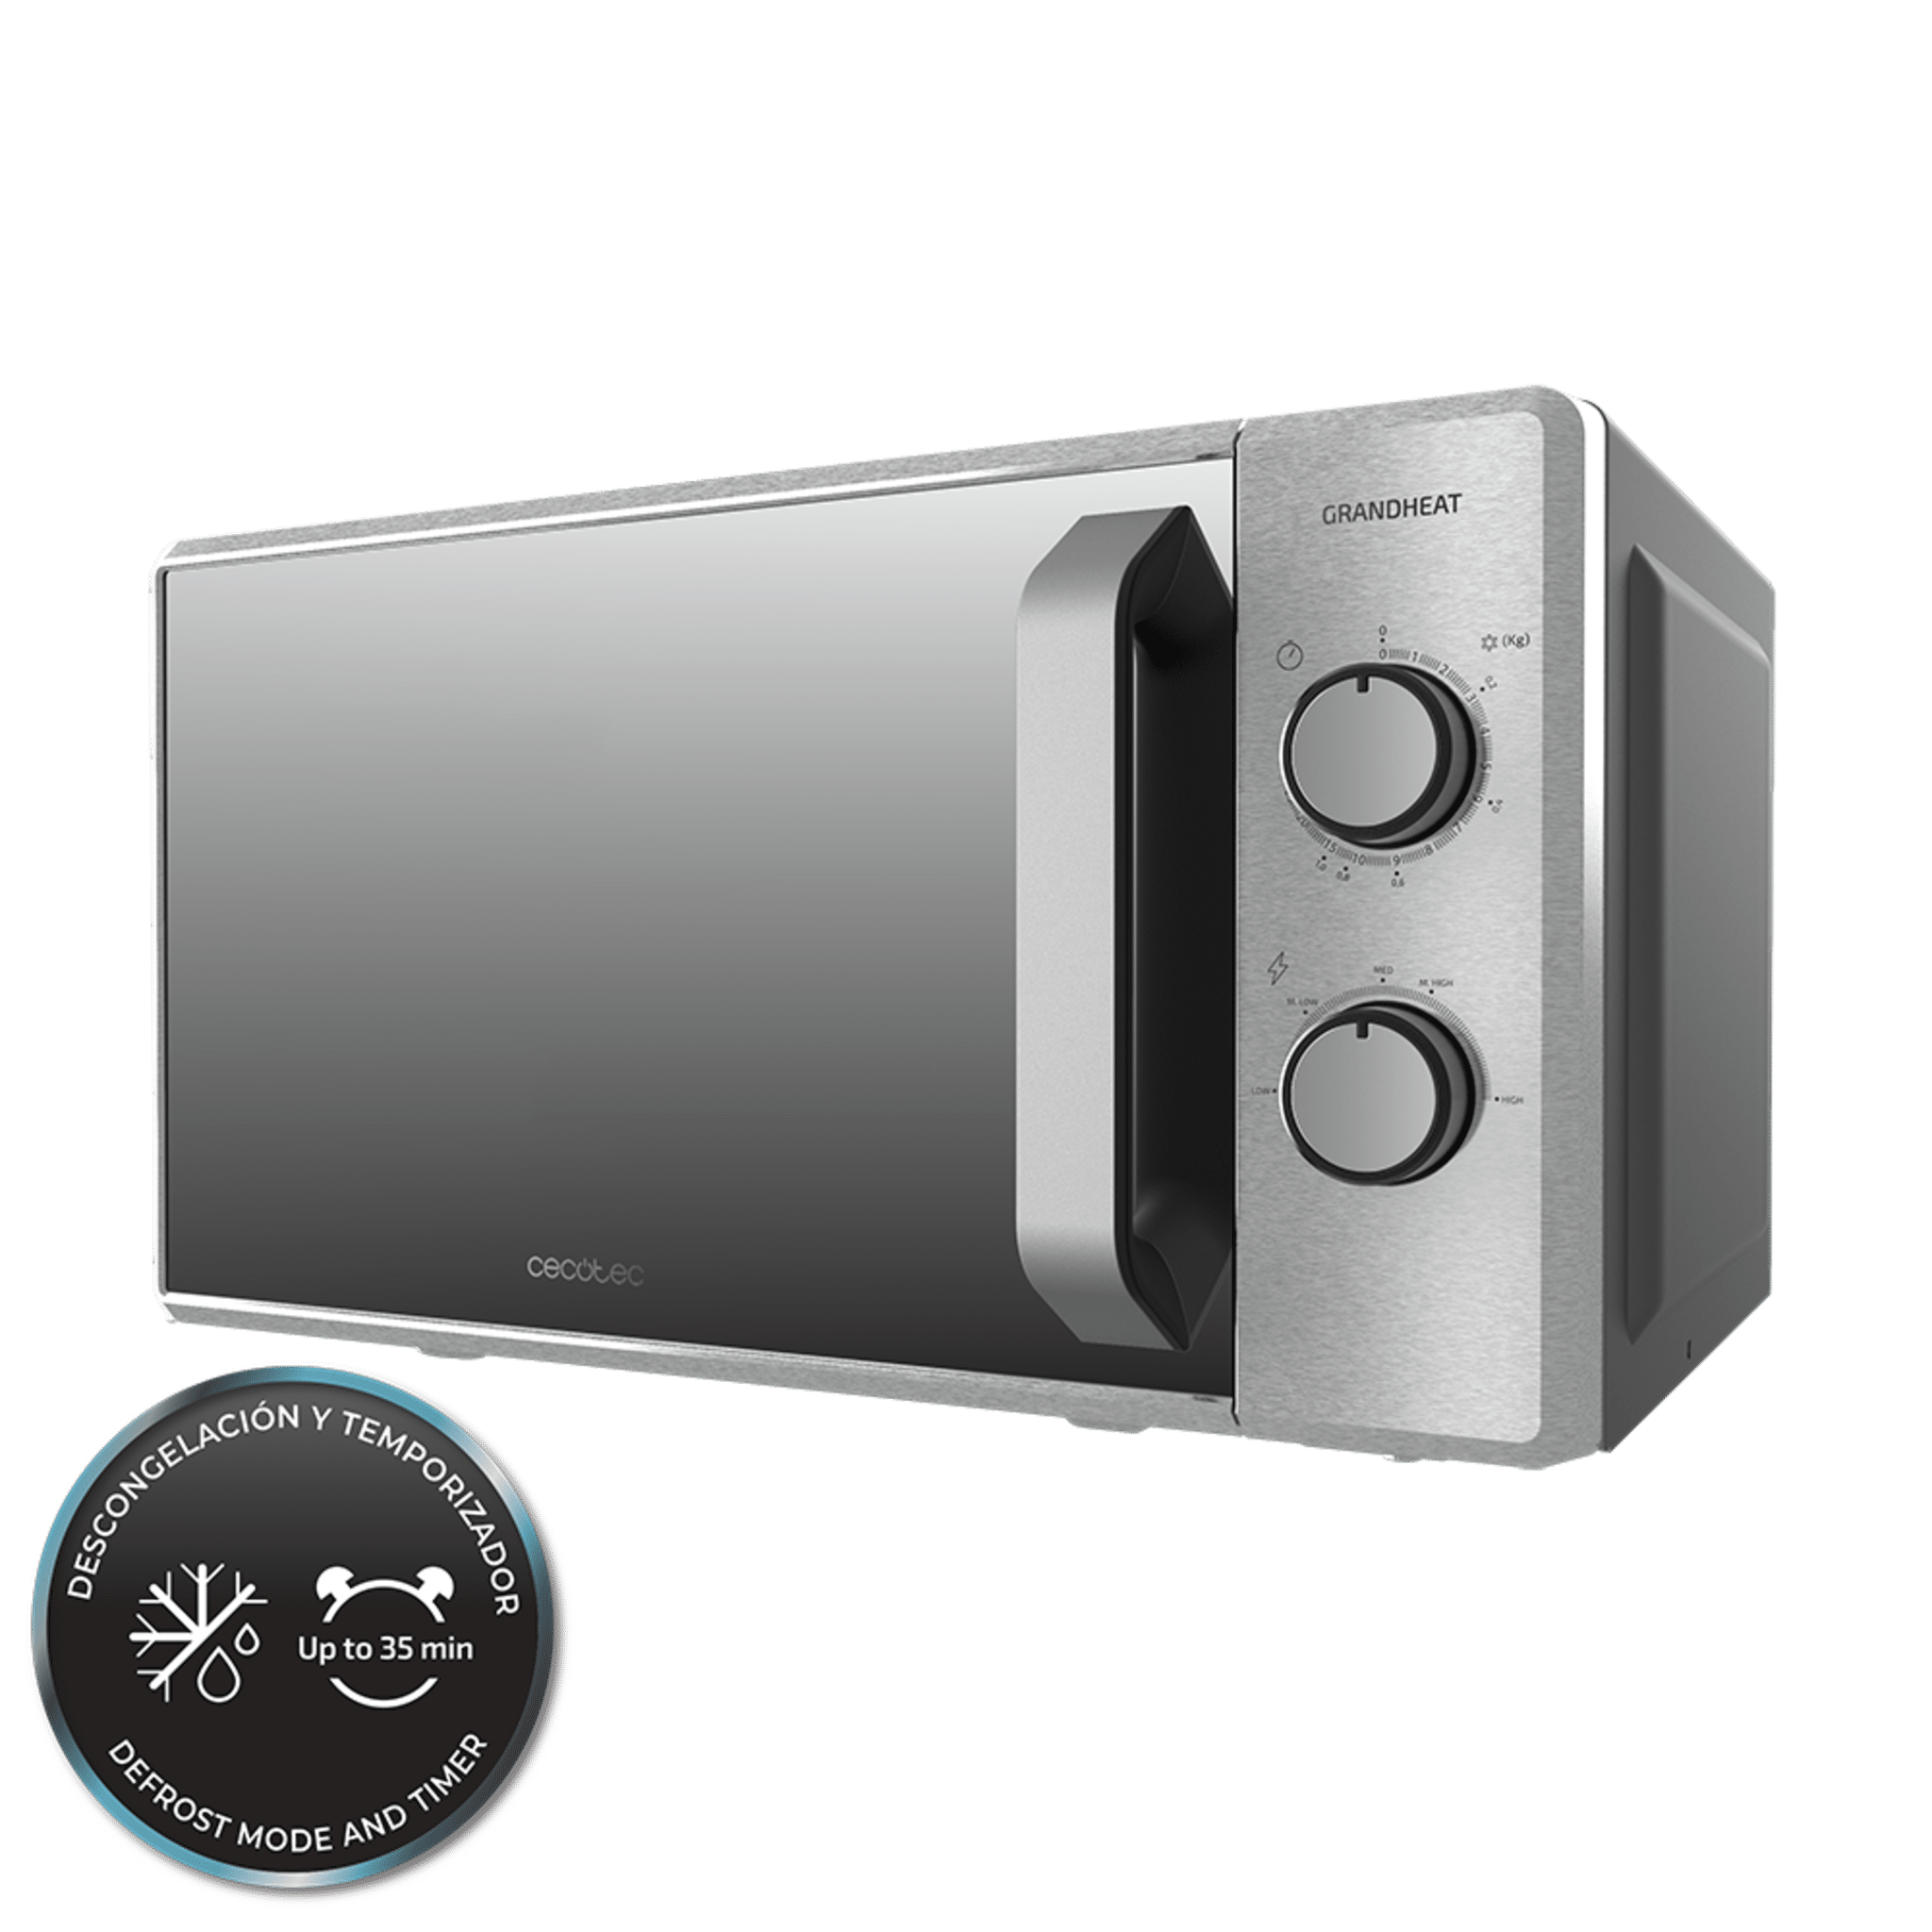 ICQN Microonde Solo, vano cottura 20 l, 5 livelli di potenza, forno a  microonde compatto con interno in acciaio inox, bianco, timer incluso